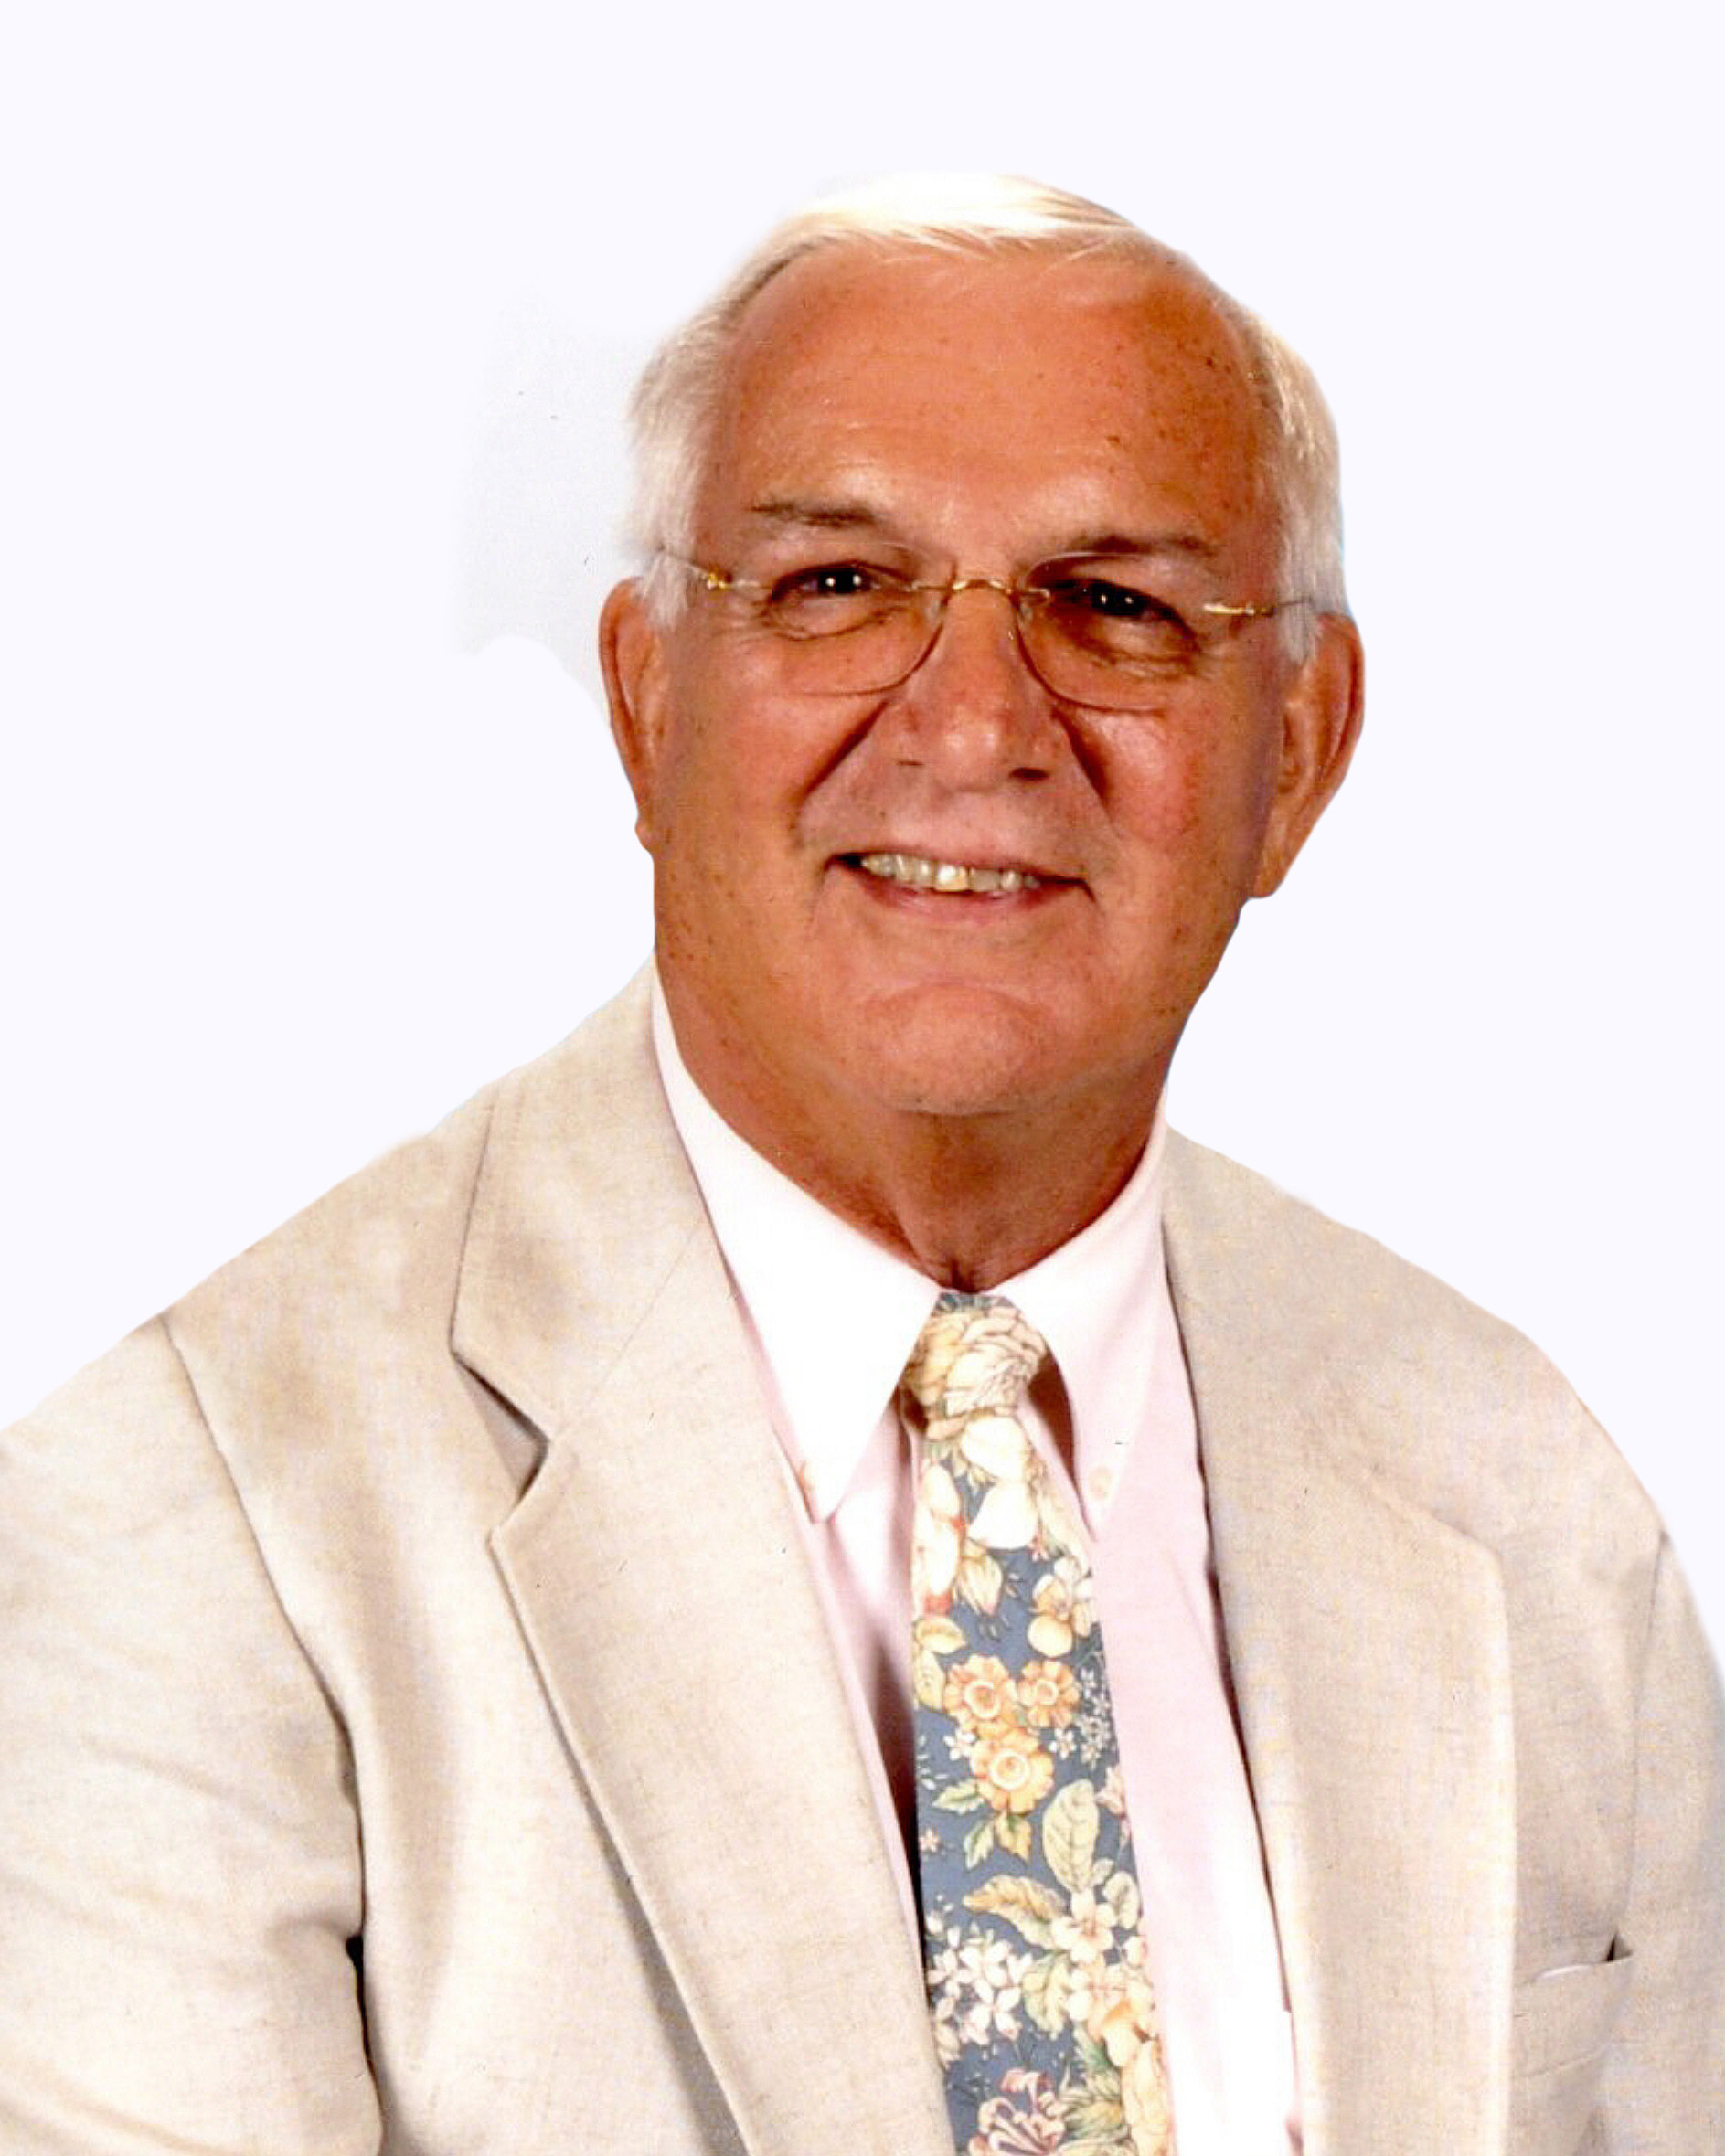 Alan E. Bayer